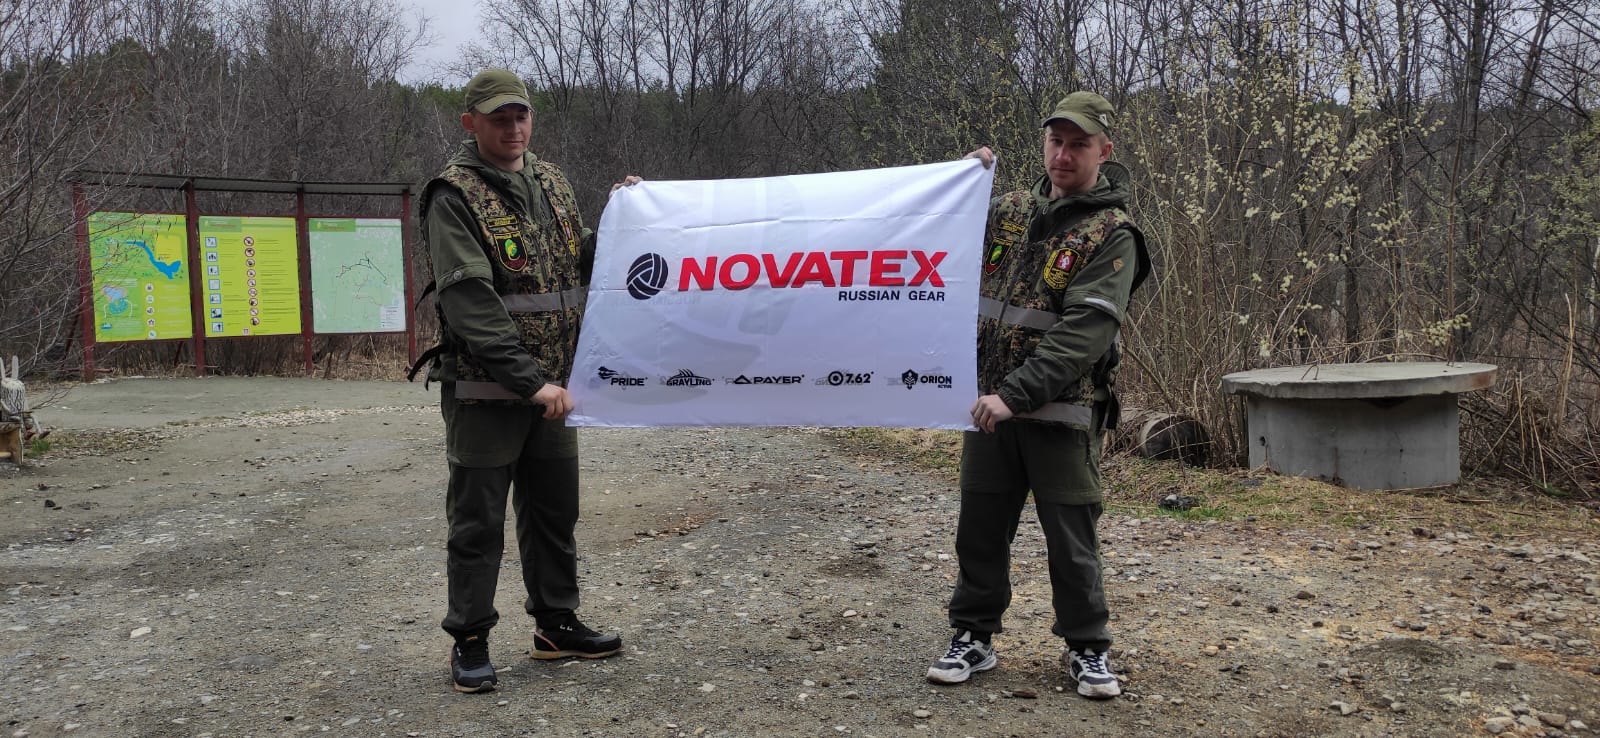 Компания NOVATEX объявляет о своем участии в благоустройстве природного парка "Бажовские места"